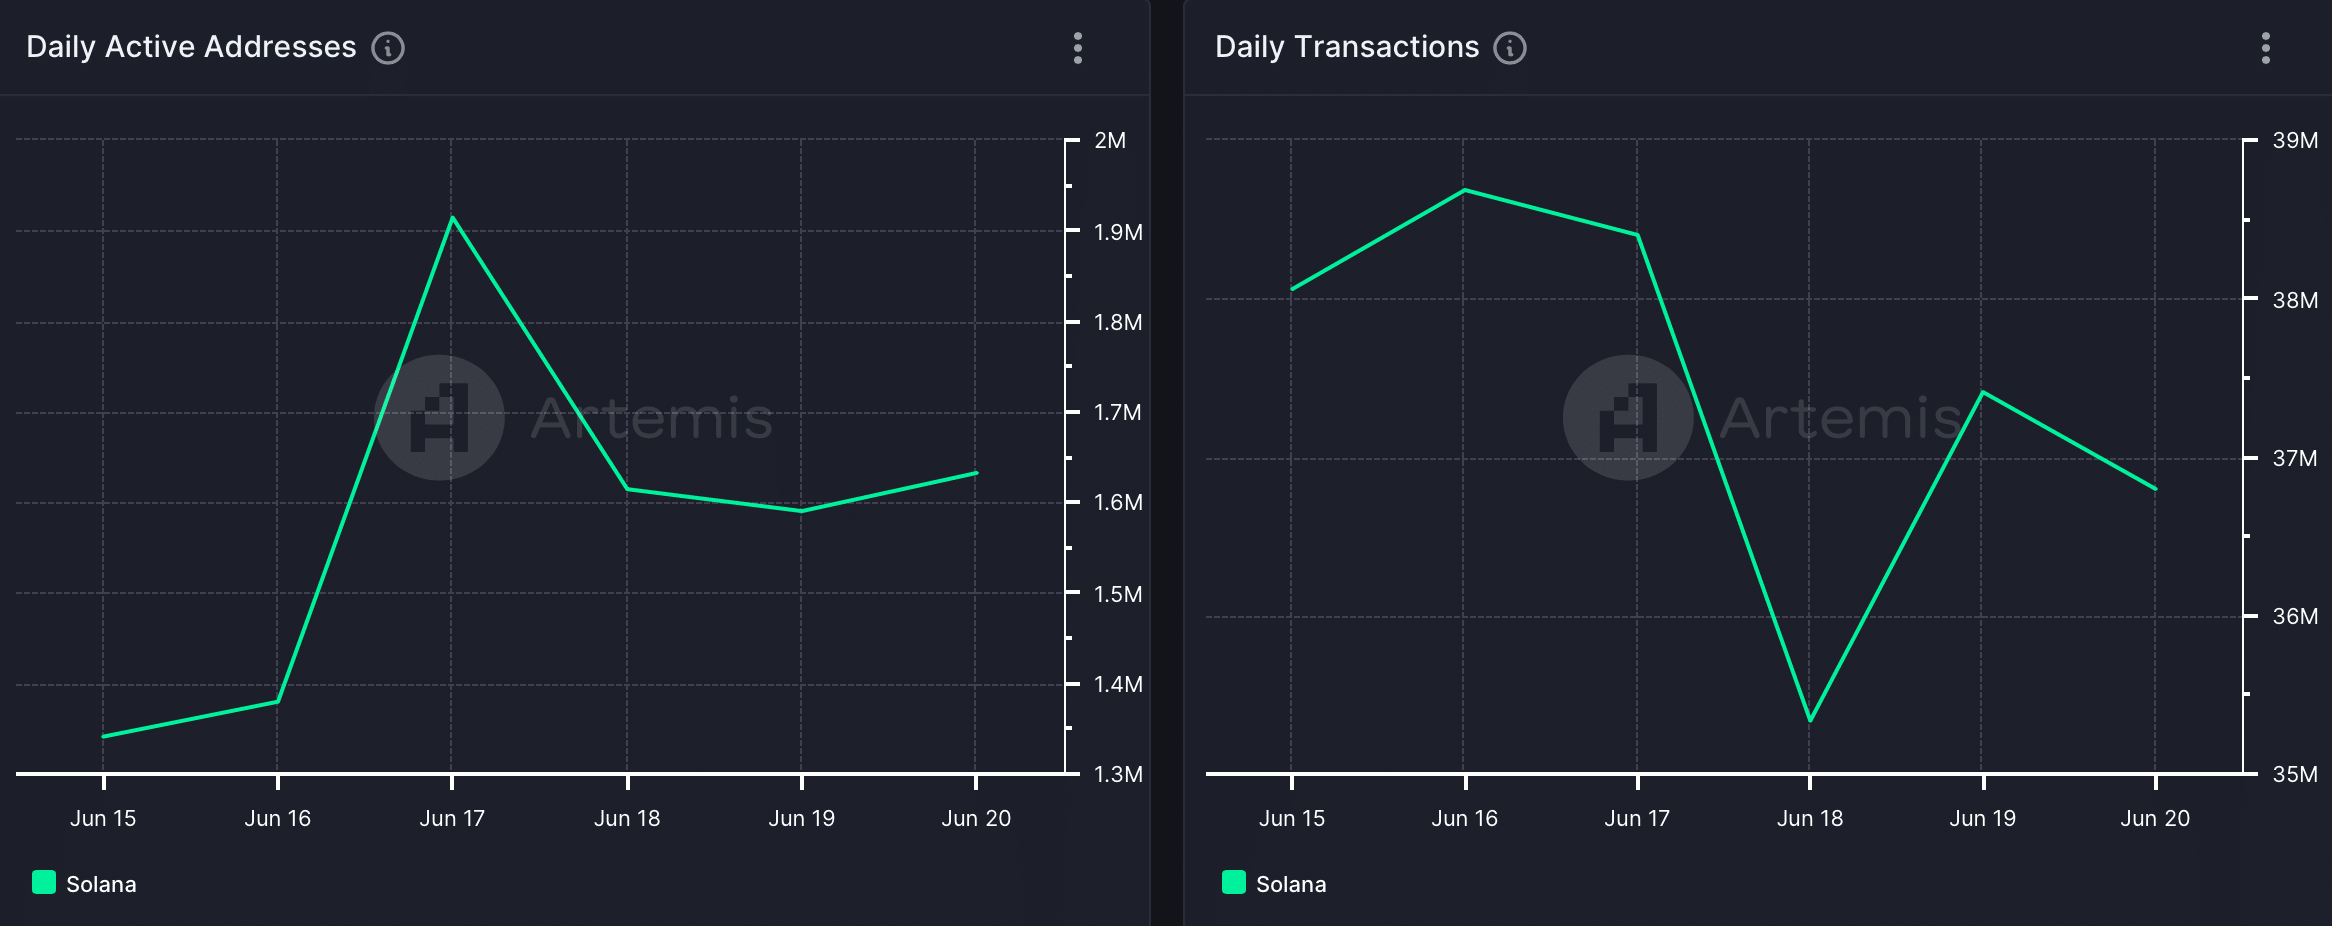 Solana's daily transactions fell